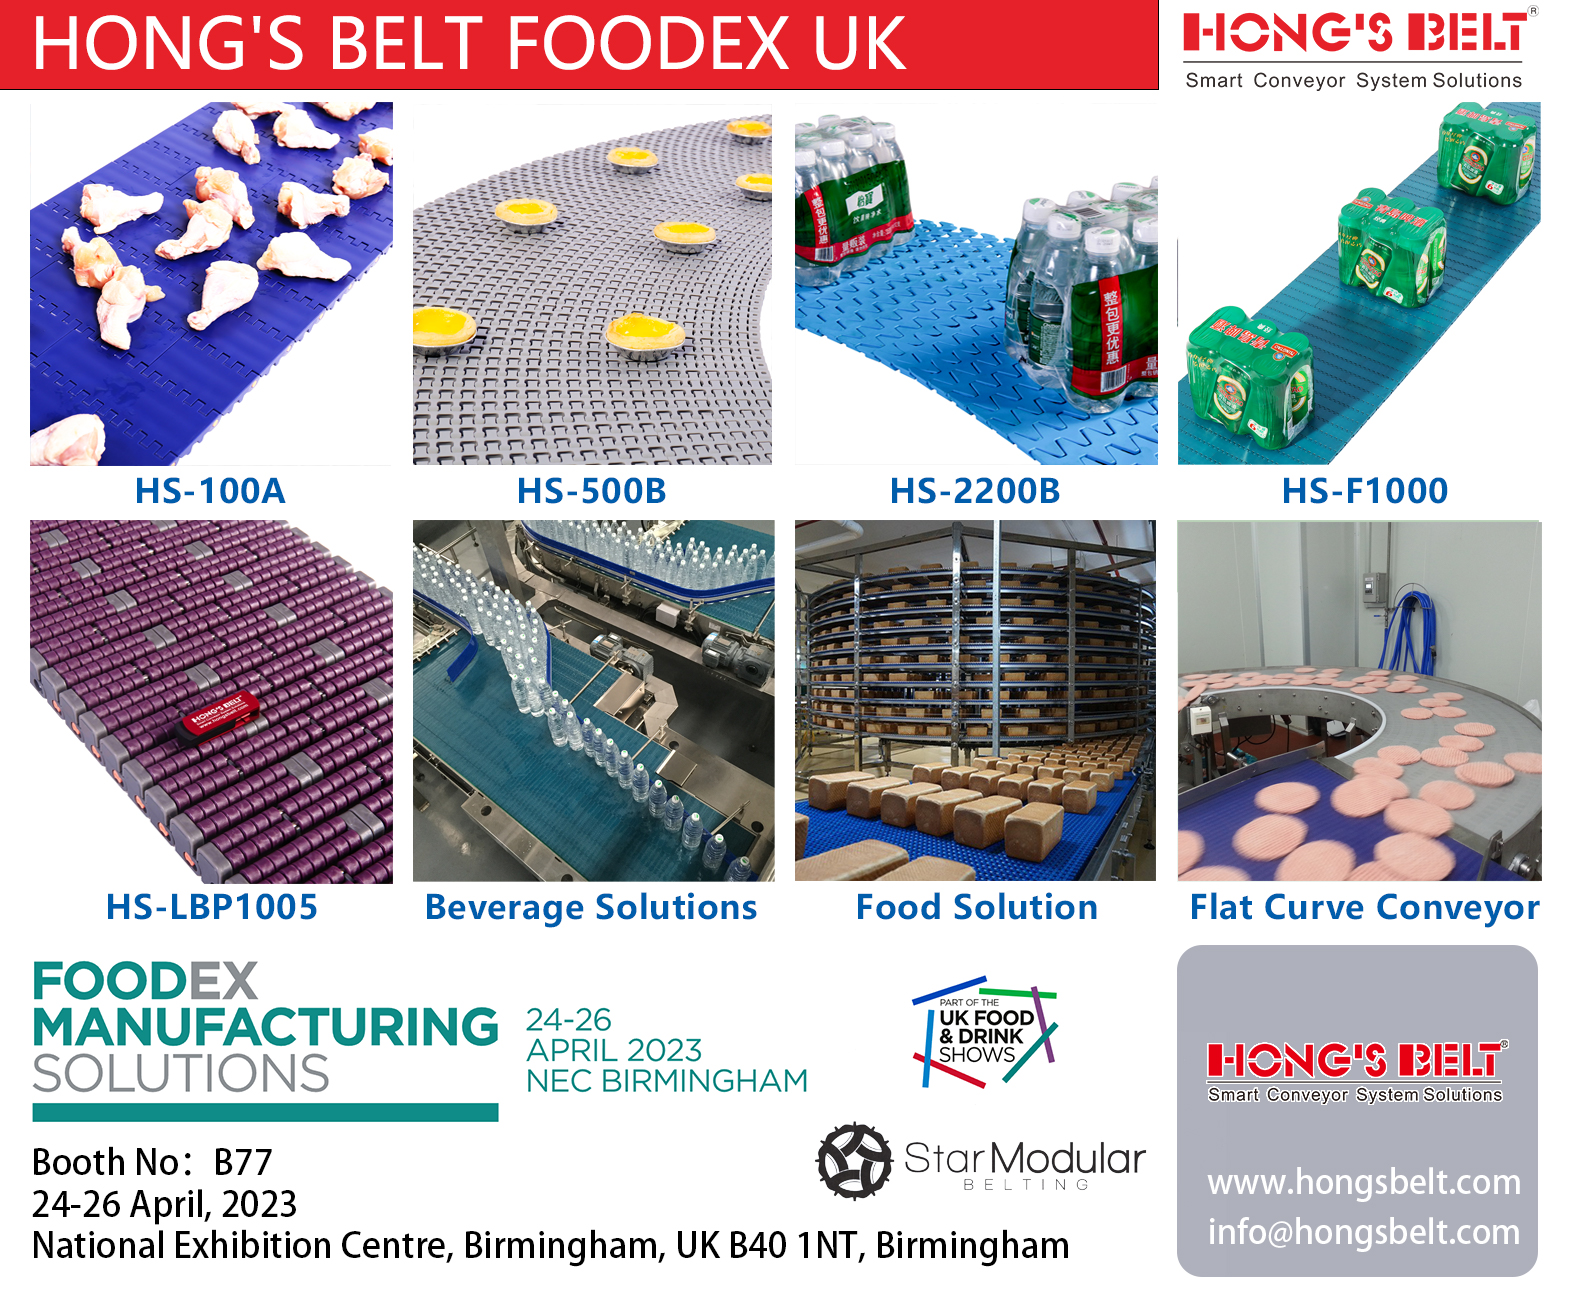 HONG'S BELT FOODEX UK 2023